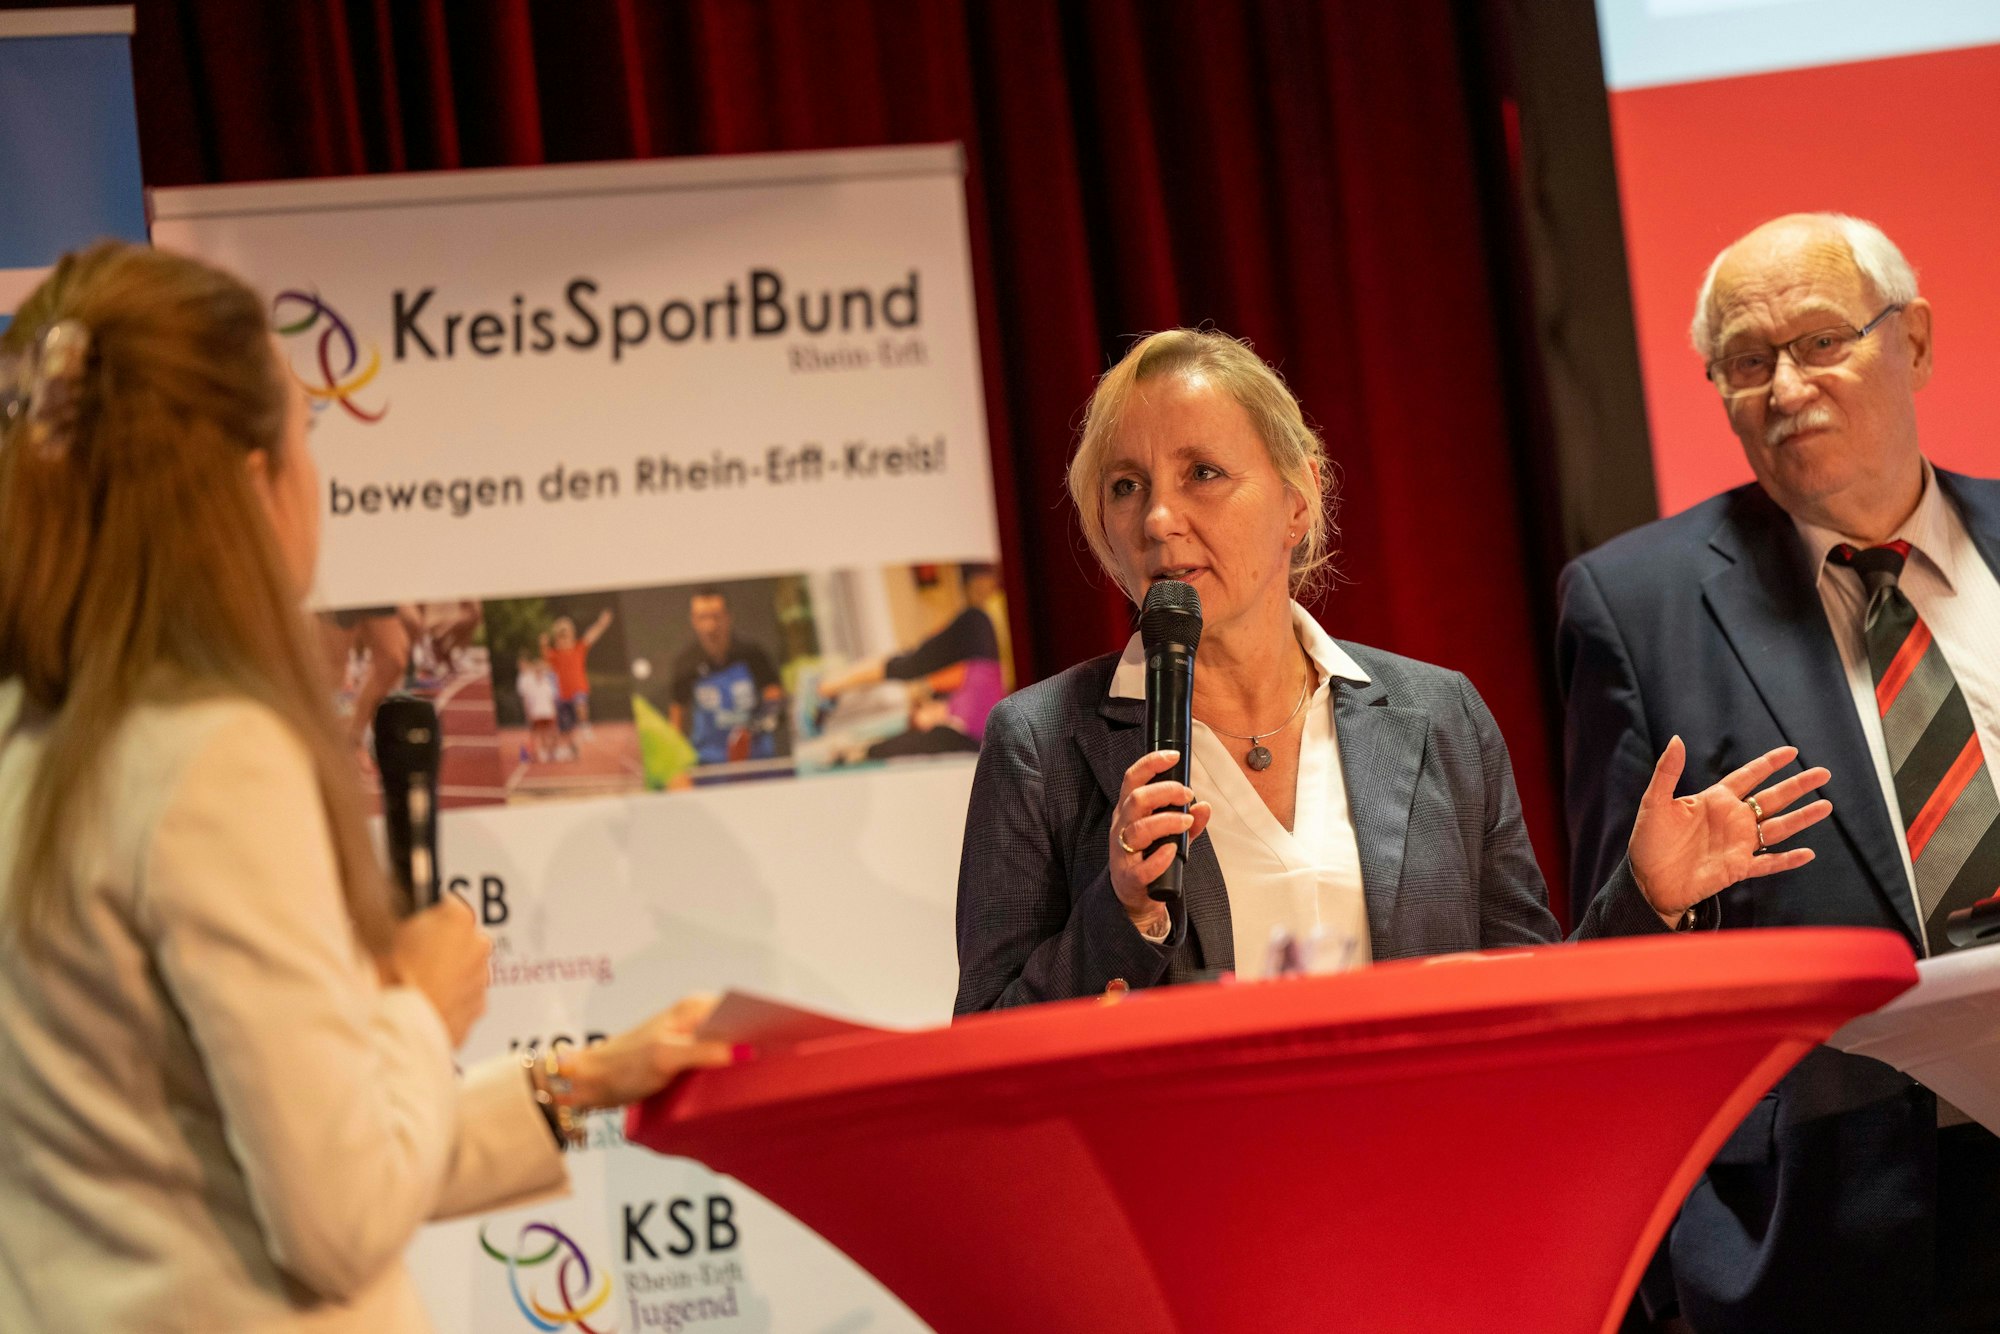 Das Bild zeigt Rita Markus Schmitz von der Kreissparkasse Köln und Harald Dudzus von Kreissportbund im Gespräch.